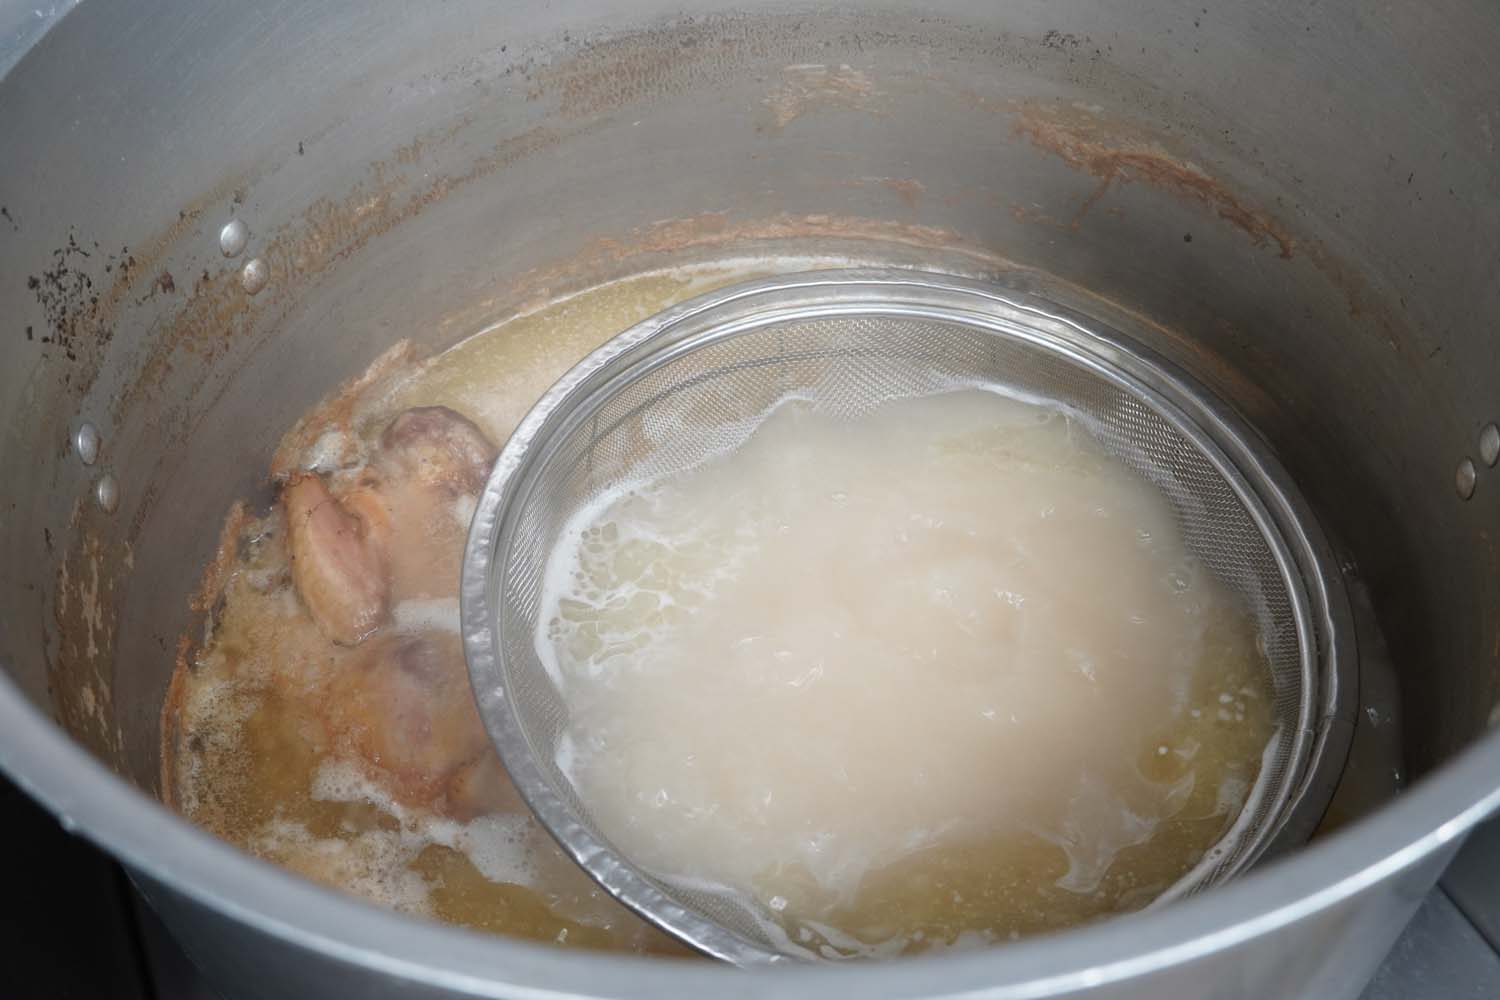 スープは豚骨のほか鶏ガラも少し加え、コクがあるが軽い仕上がりだ。